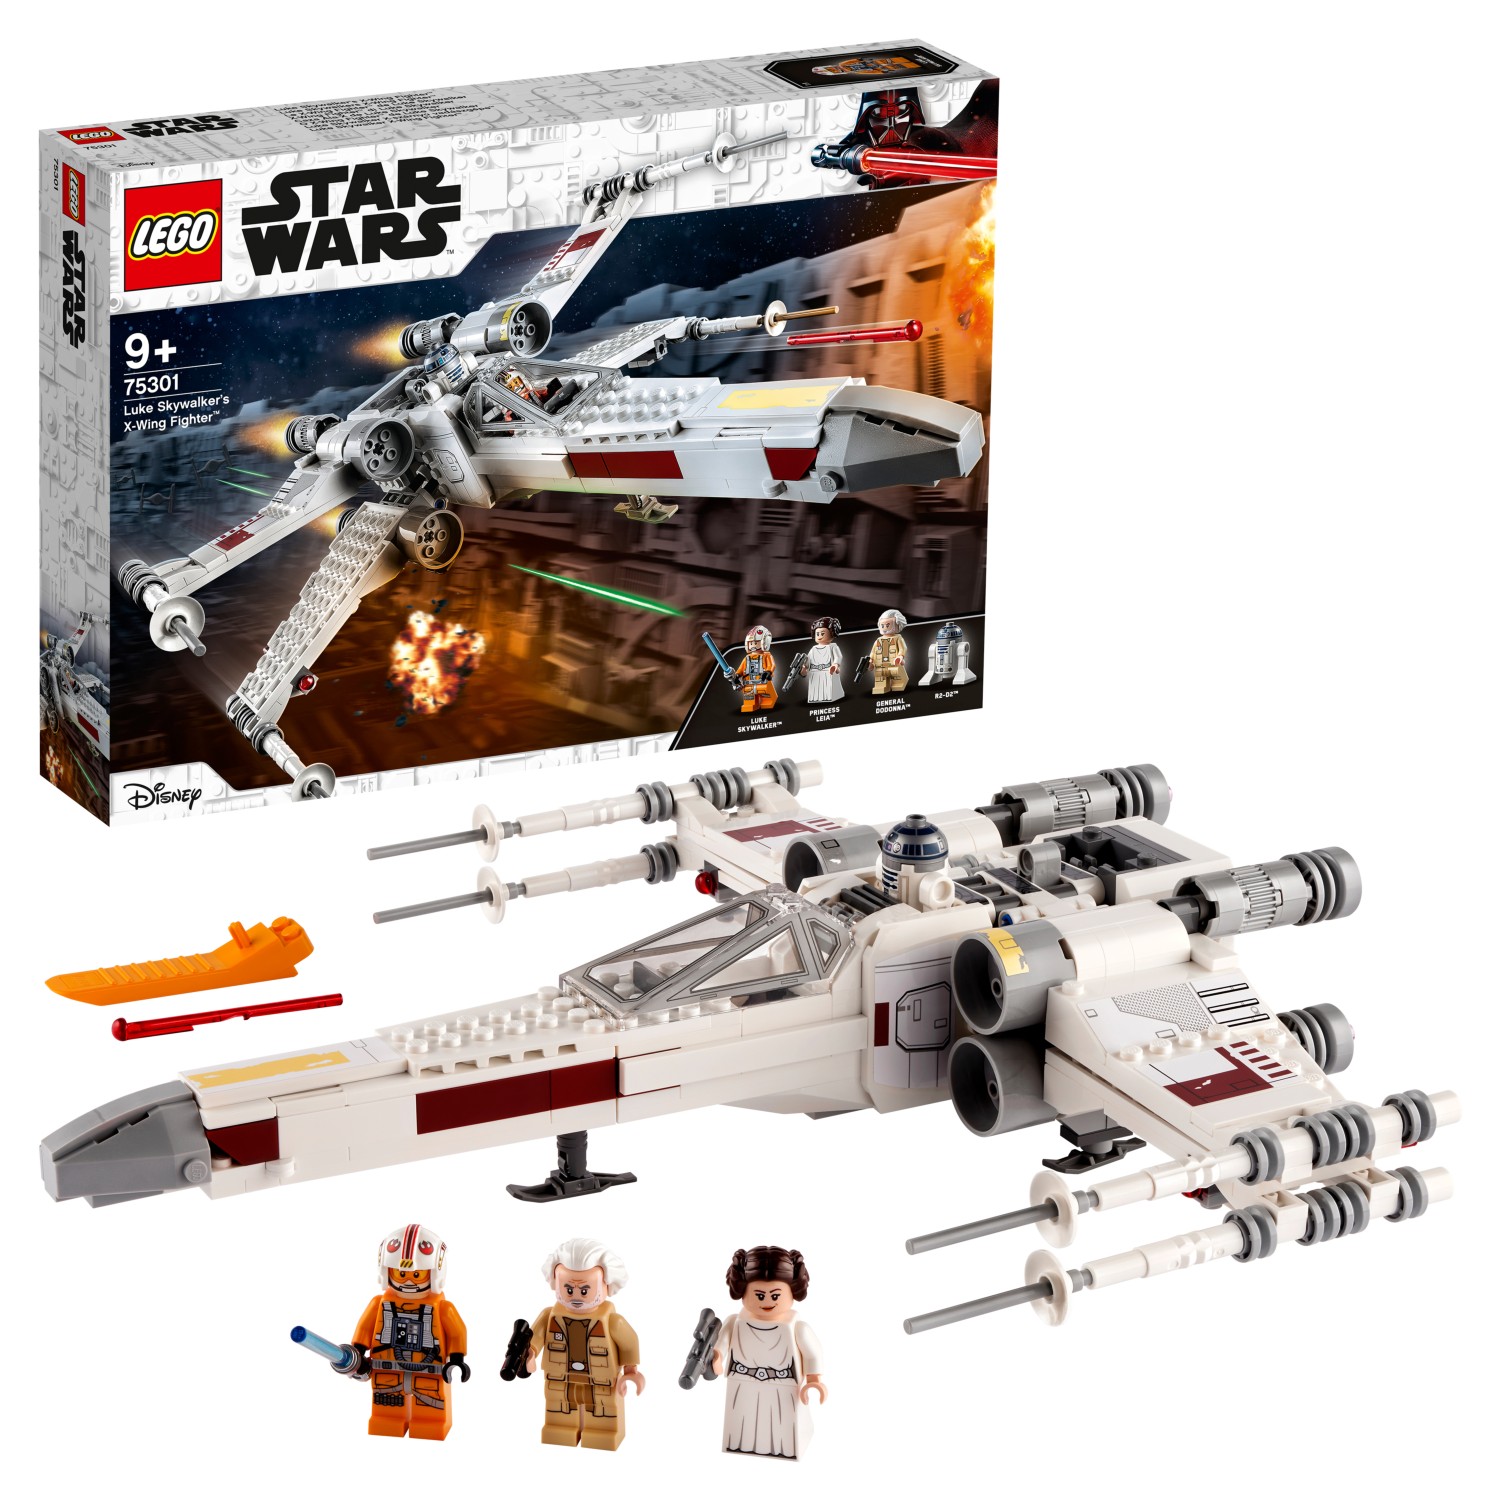 Конструктор LEGO Star Wars 75301 Истребитель типа Х Люка Скайуокера конструктор lego star wars 75300 имперский истребитель сид